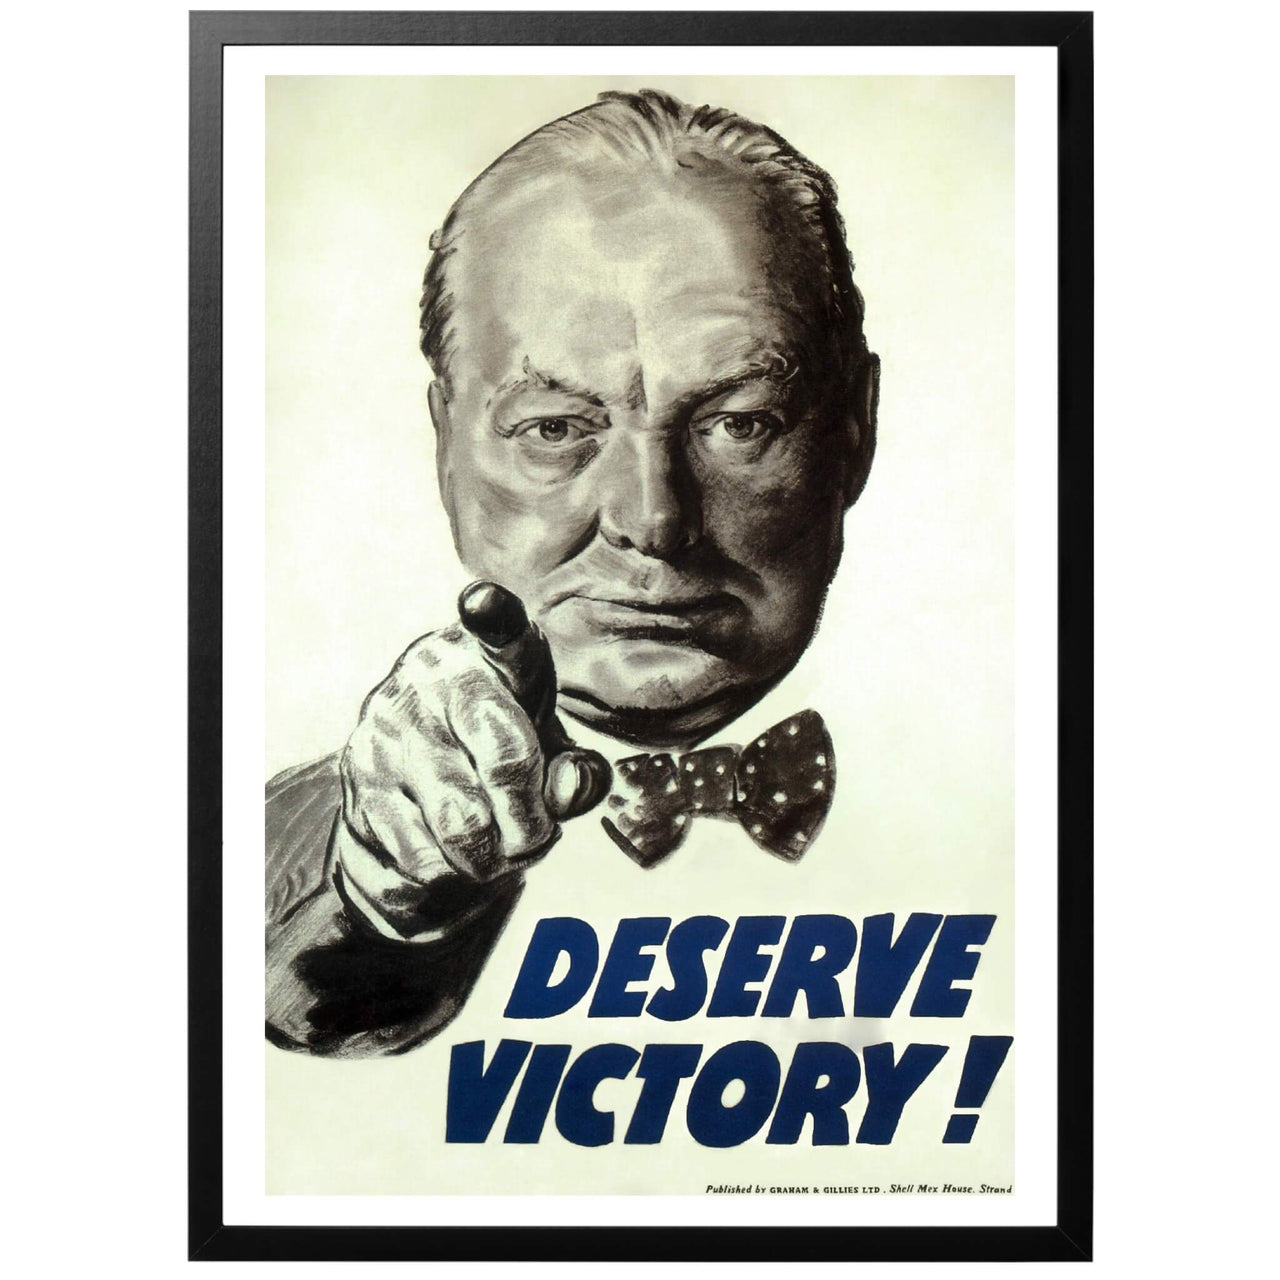 Förtjäna segern! Brittisk WWII propaganda affisch - "Deserve Victory" - "Förtjäna segern!" - Brittisk andra världskriget poster med Winston Churchill pekandes på tittaren - du måste kämpa på och förtjäna segern! Digitalt restaurerad för bästa resultat. Tryckt av WorldWarEra i våra egna lokaler i Sverige. Vi skickar med PostNord - fri frakt från 450 kr!